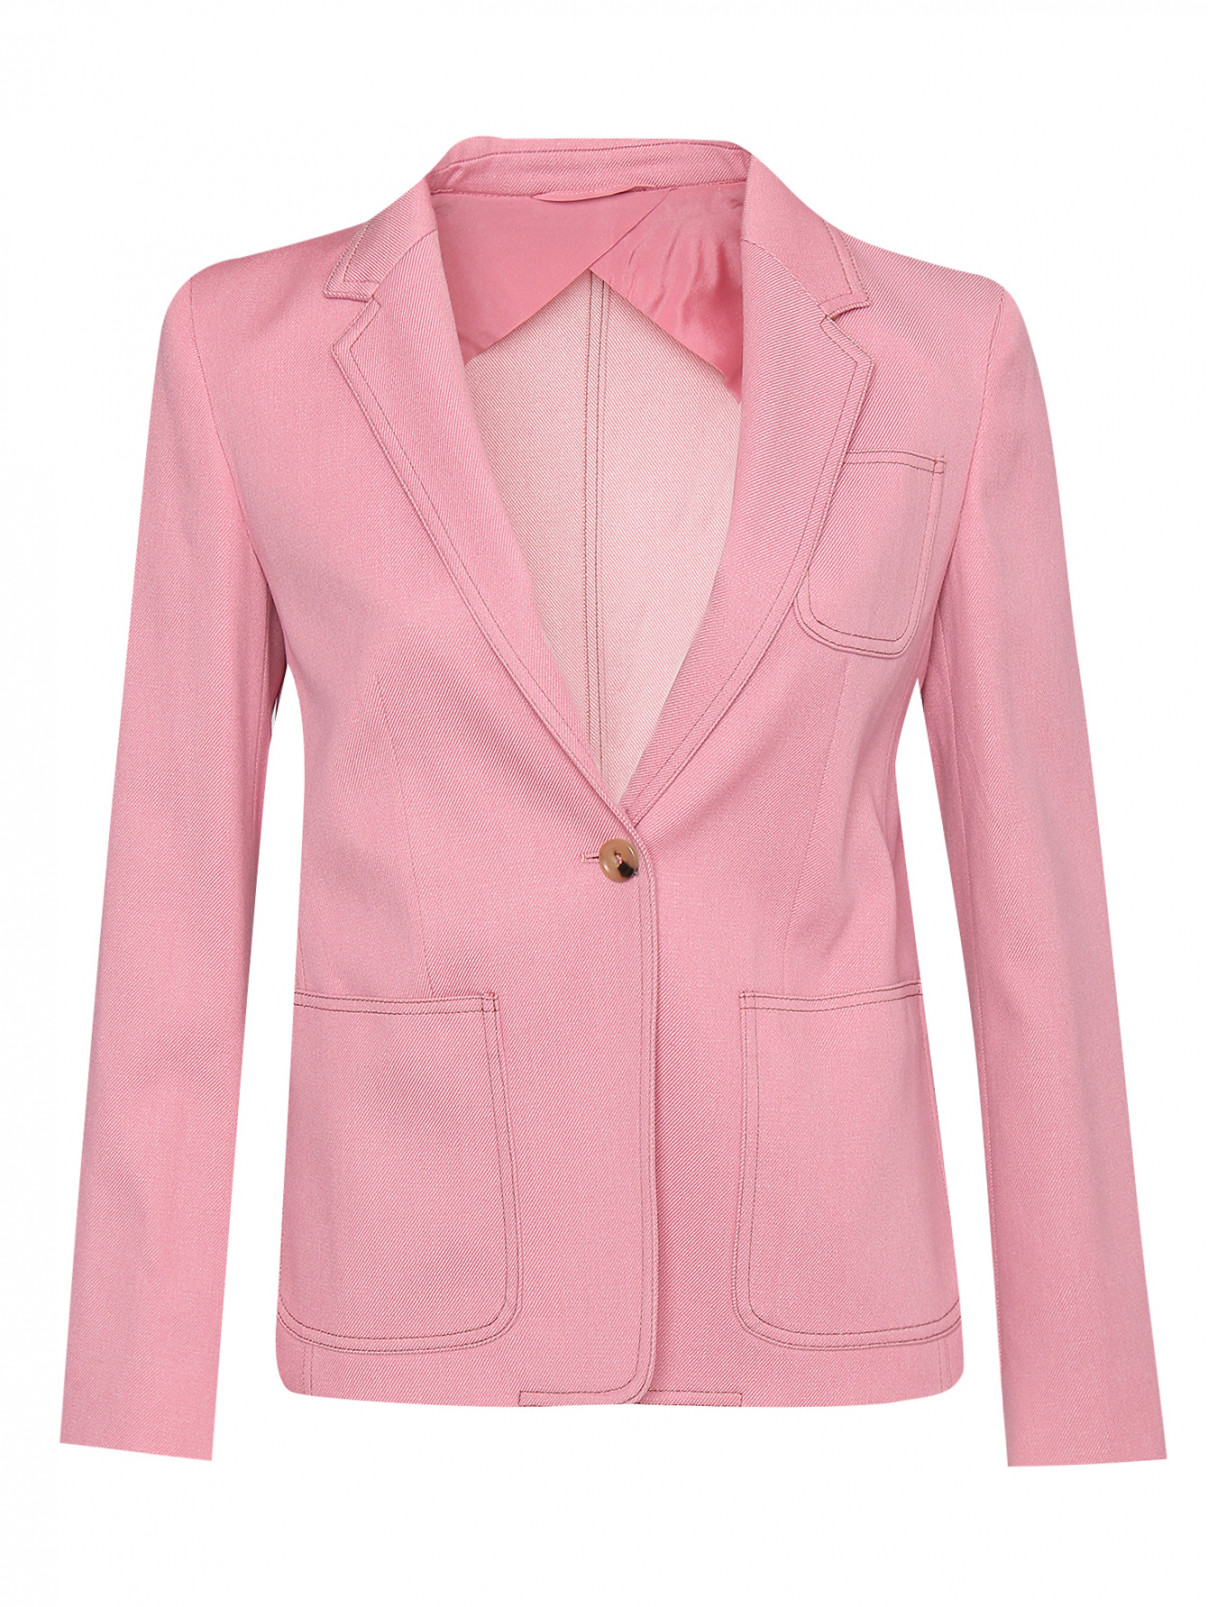 Однобортный жакет из шерсти с карманами Max Mara  –  Общий вид  – Цвет:  Розовый